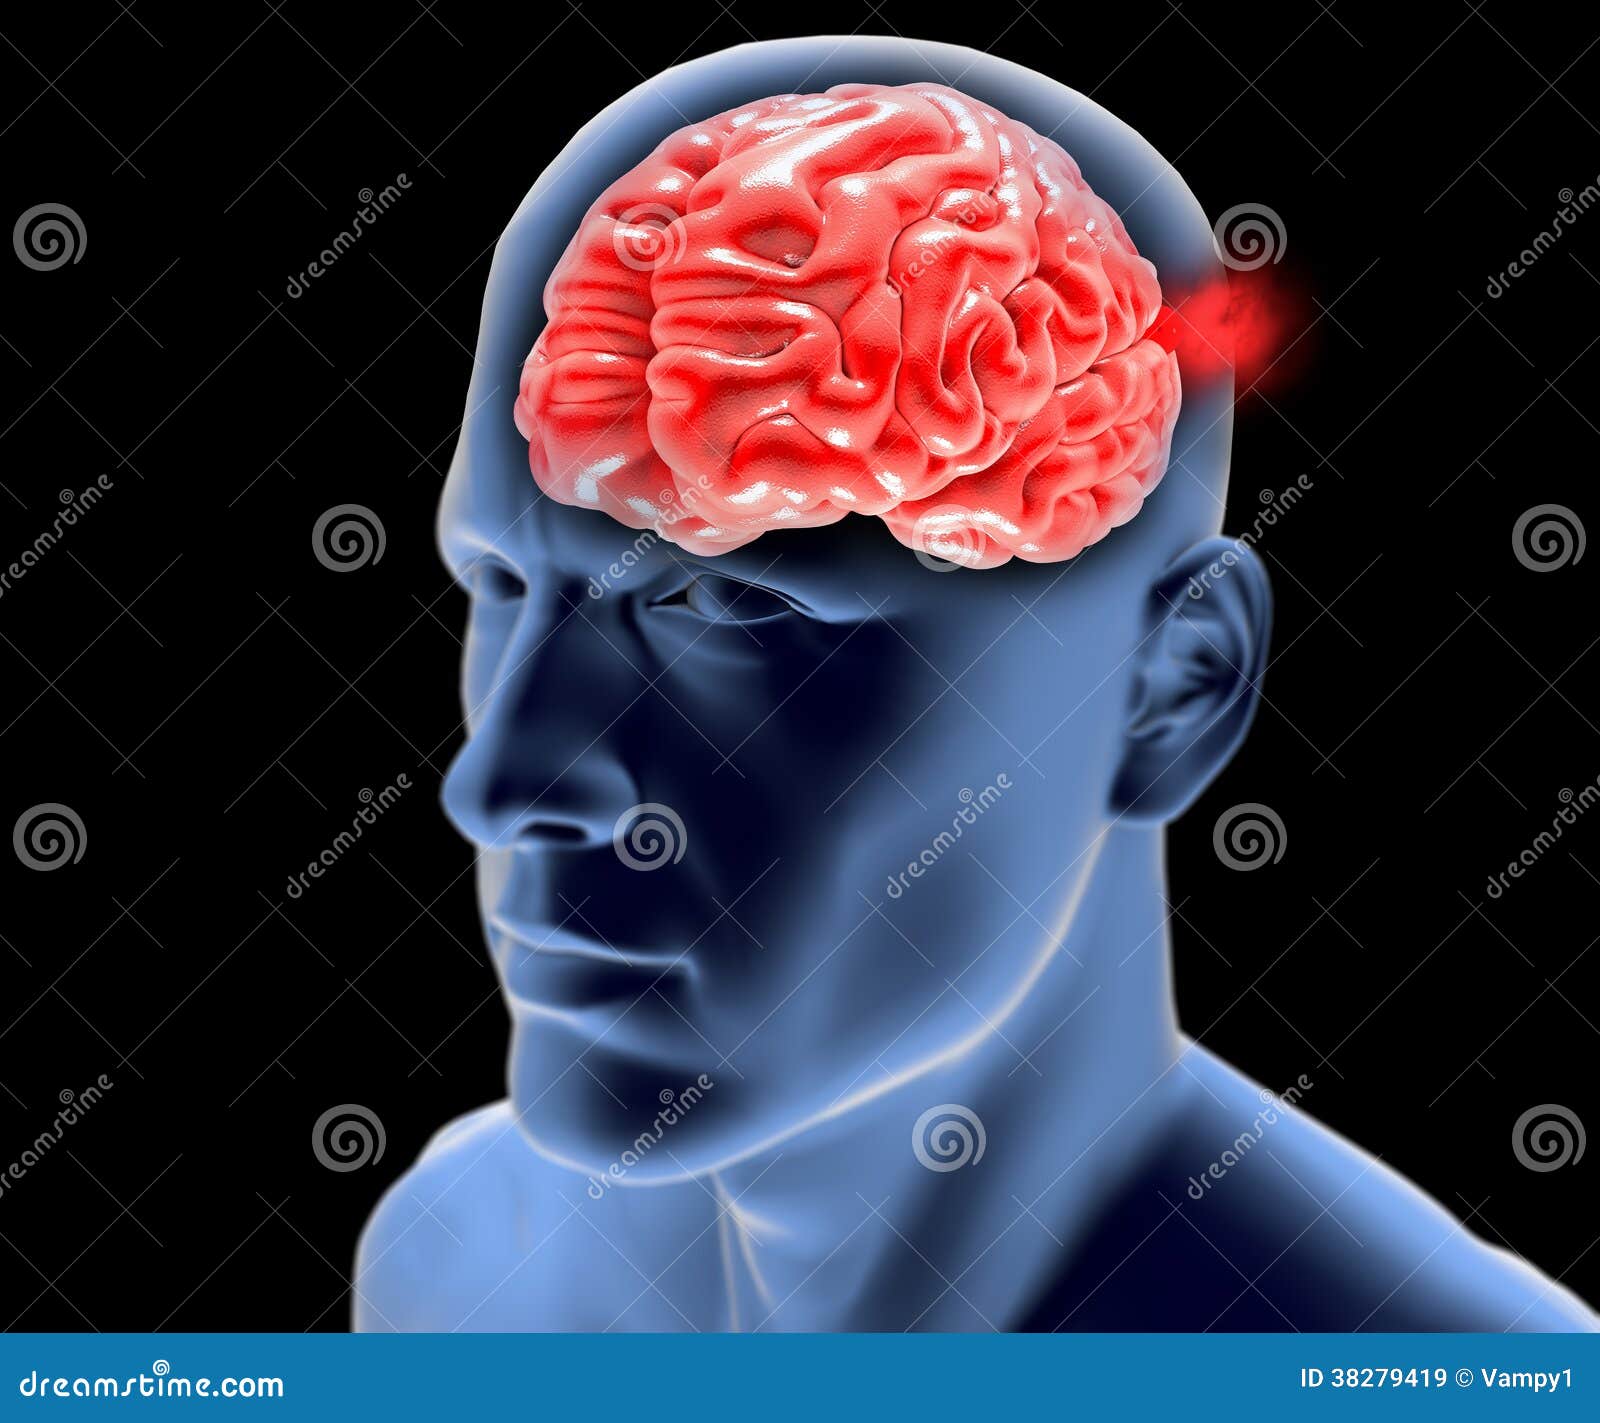 cerebral aneurysm, brain head